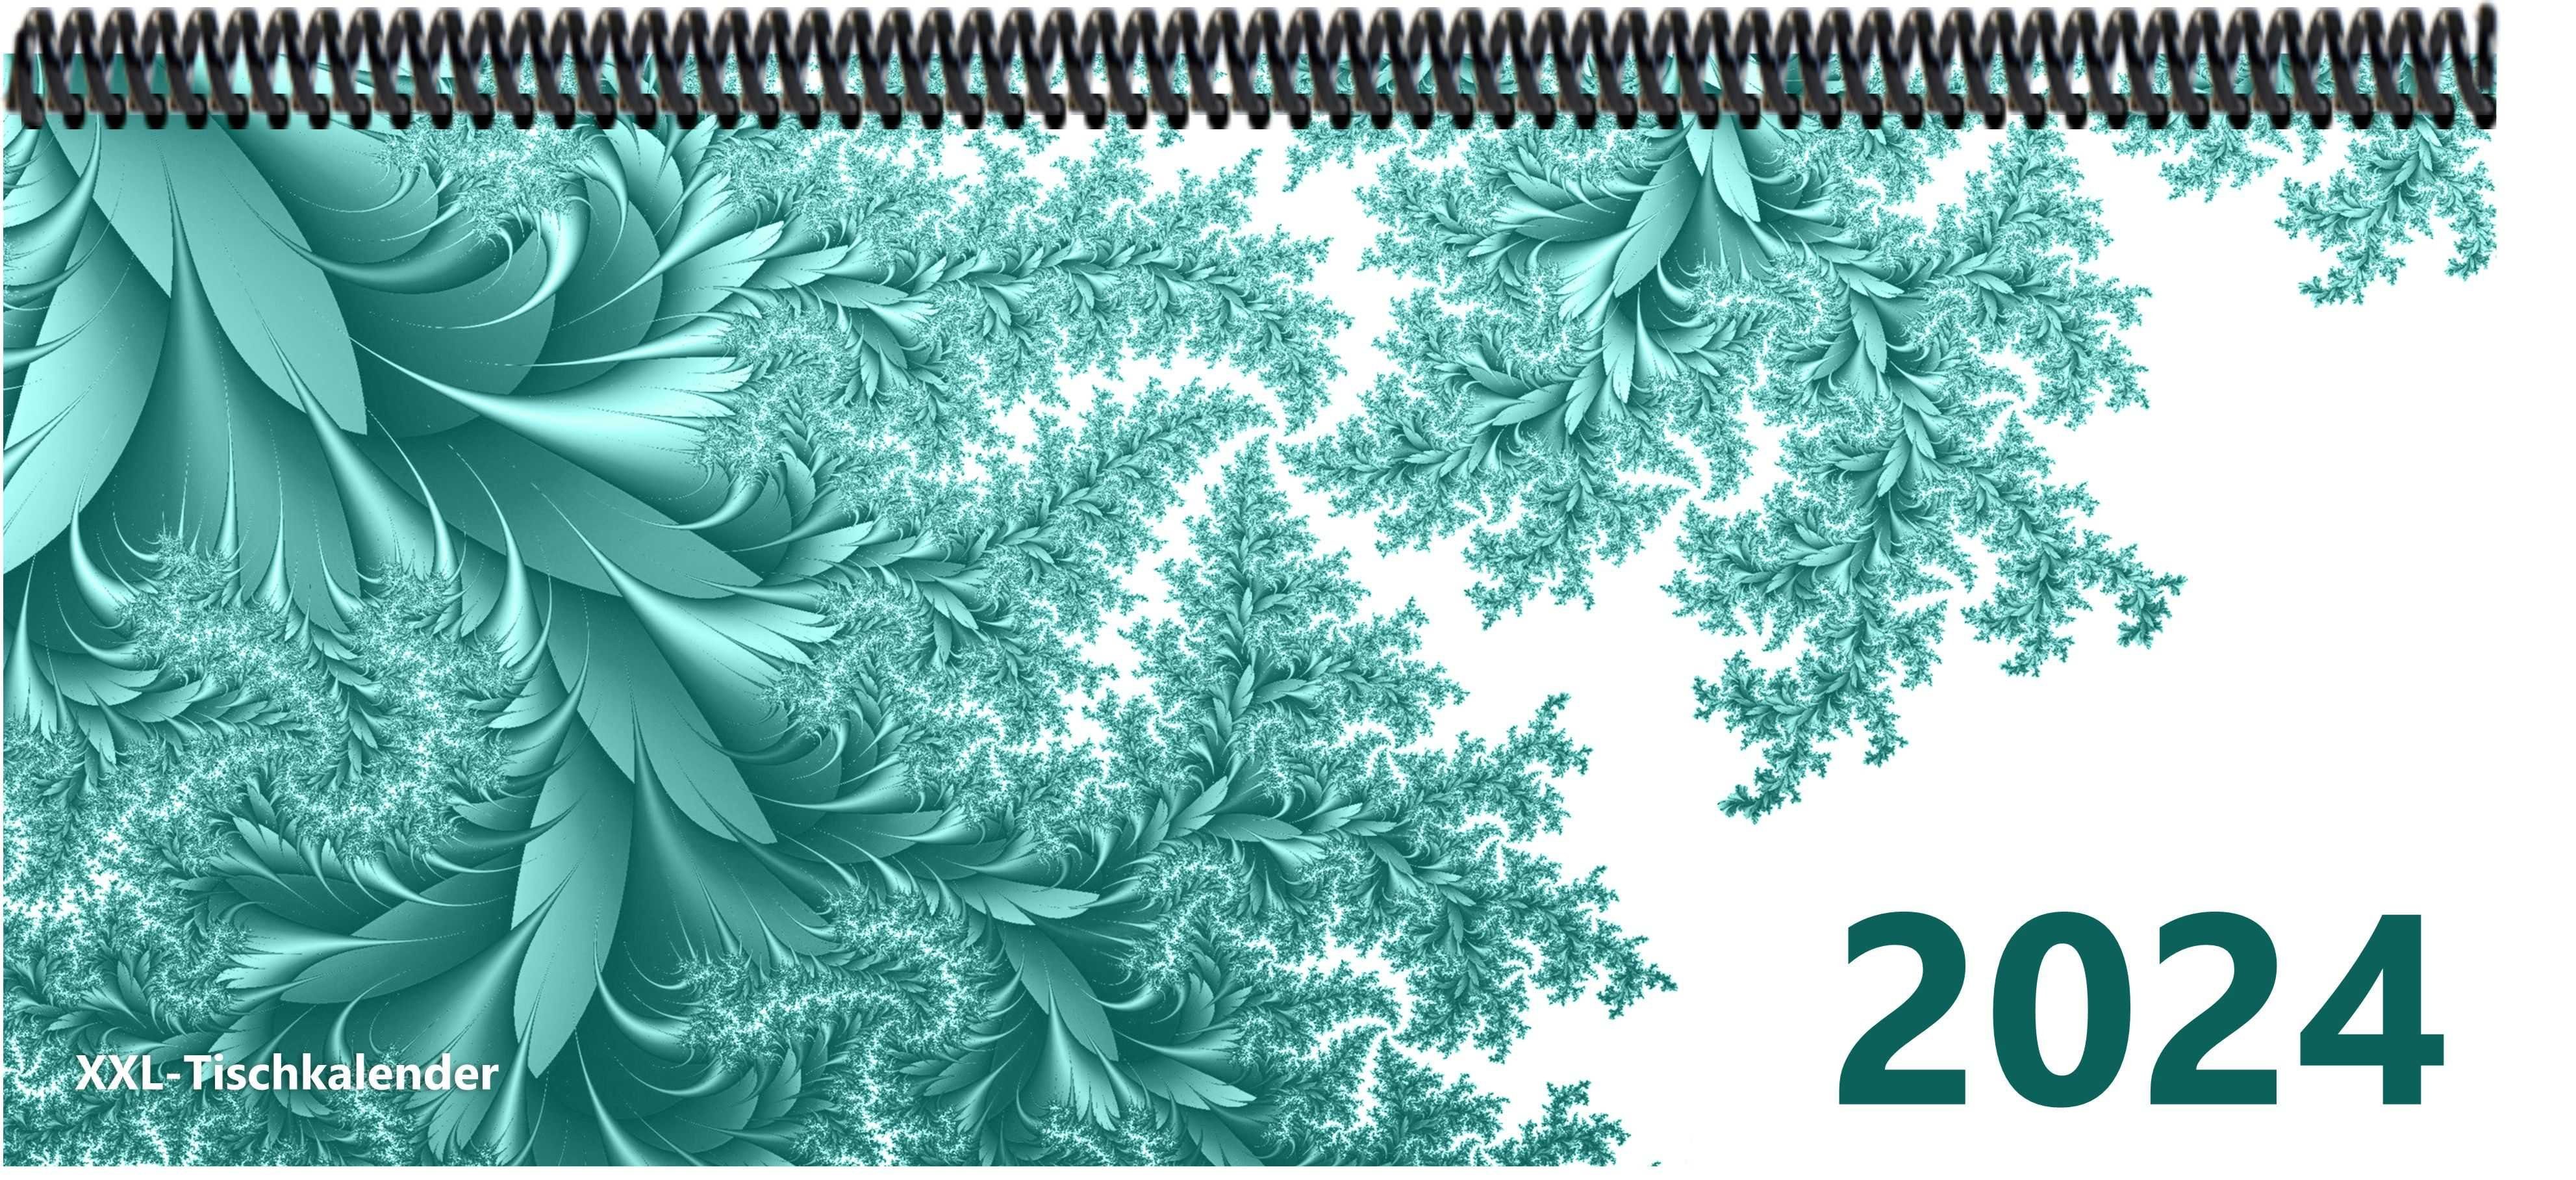 E&Z Verlag Gmbh Schreibtischkalender Bunt - Kalender XXL 2024 mit dem Muster Blätter türkis